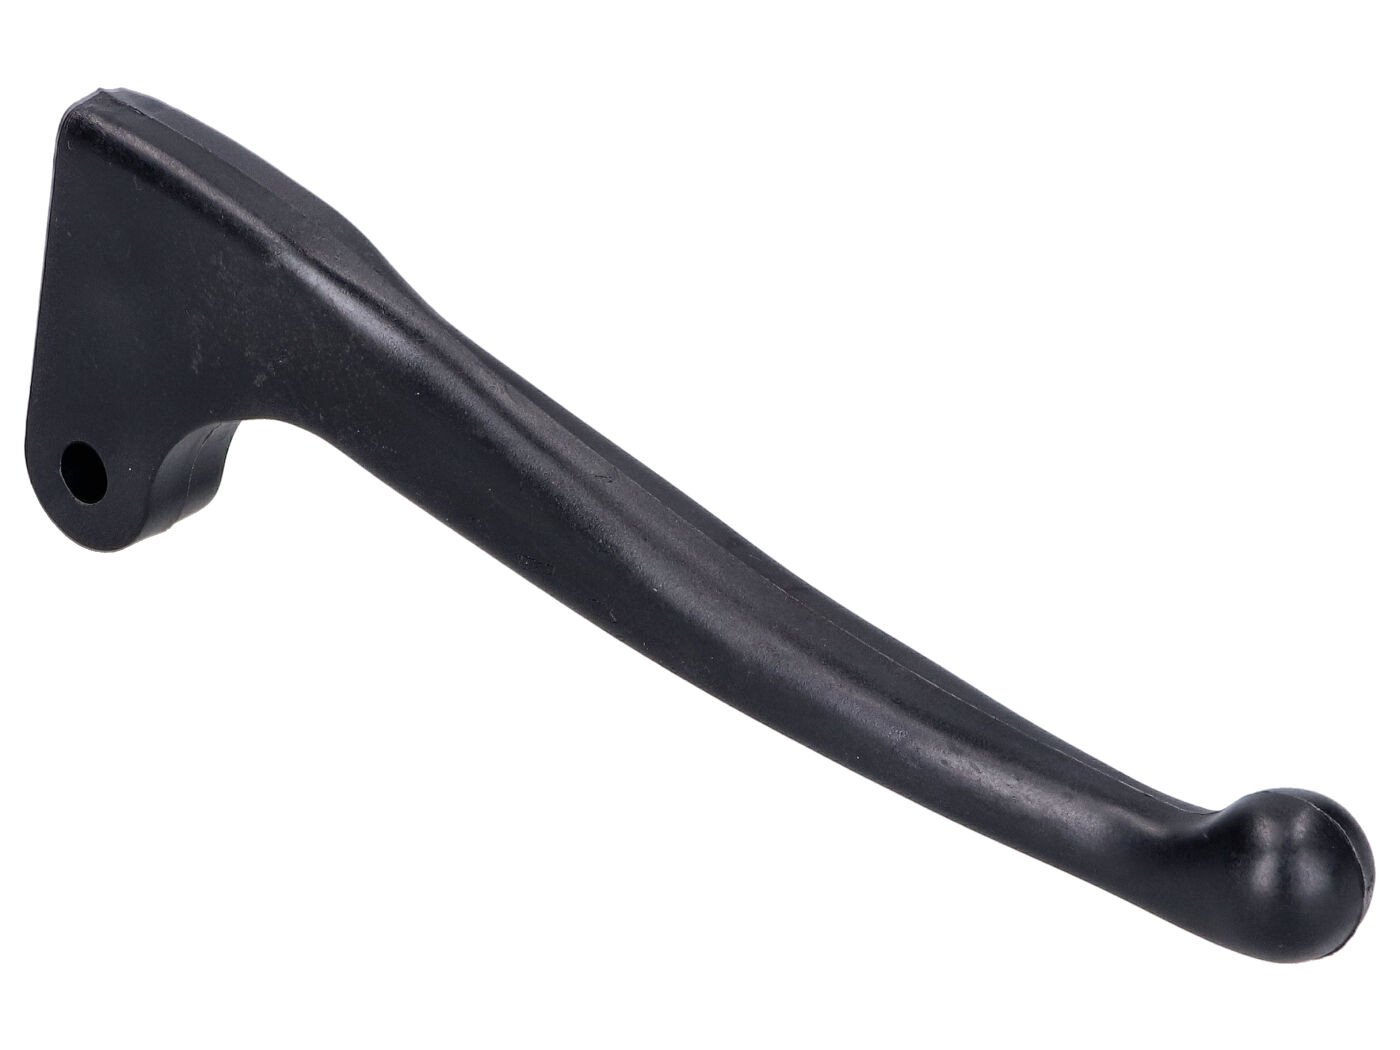 Kézifékkar armatúra nélkül, egyenes, műanyag fekete Simson S50, KR51/1, KR51/2 Schwalbe, SR4-2 Star modellekhez